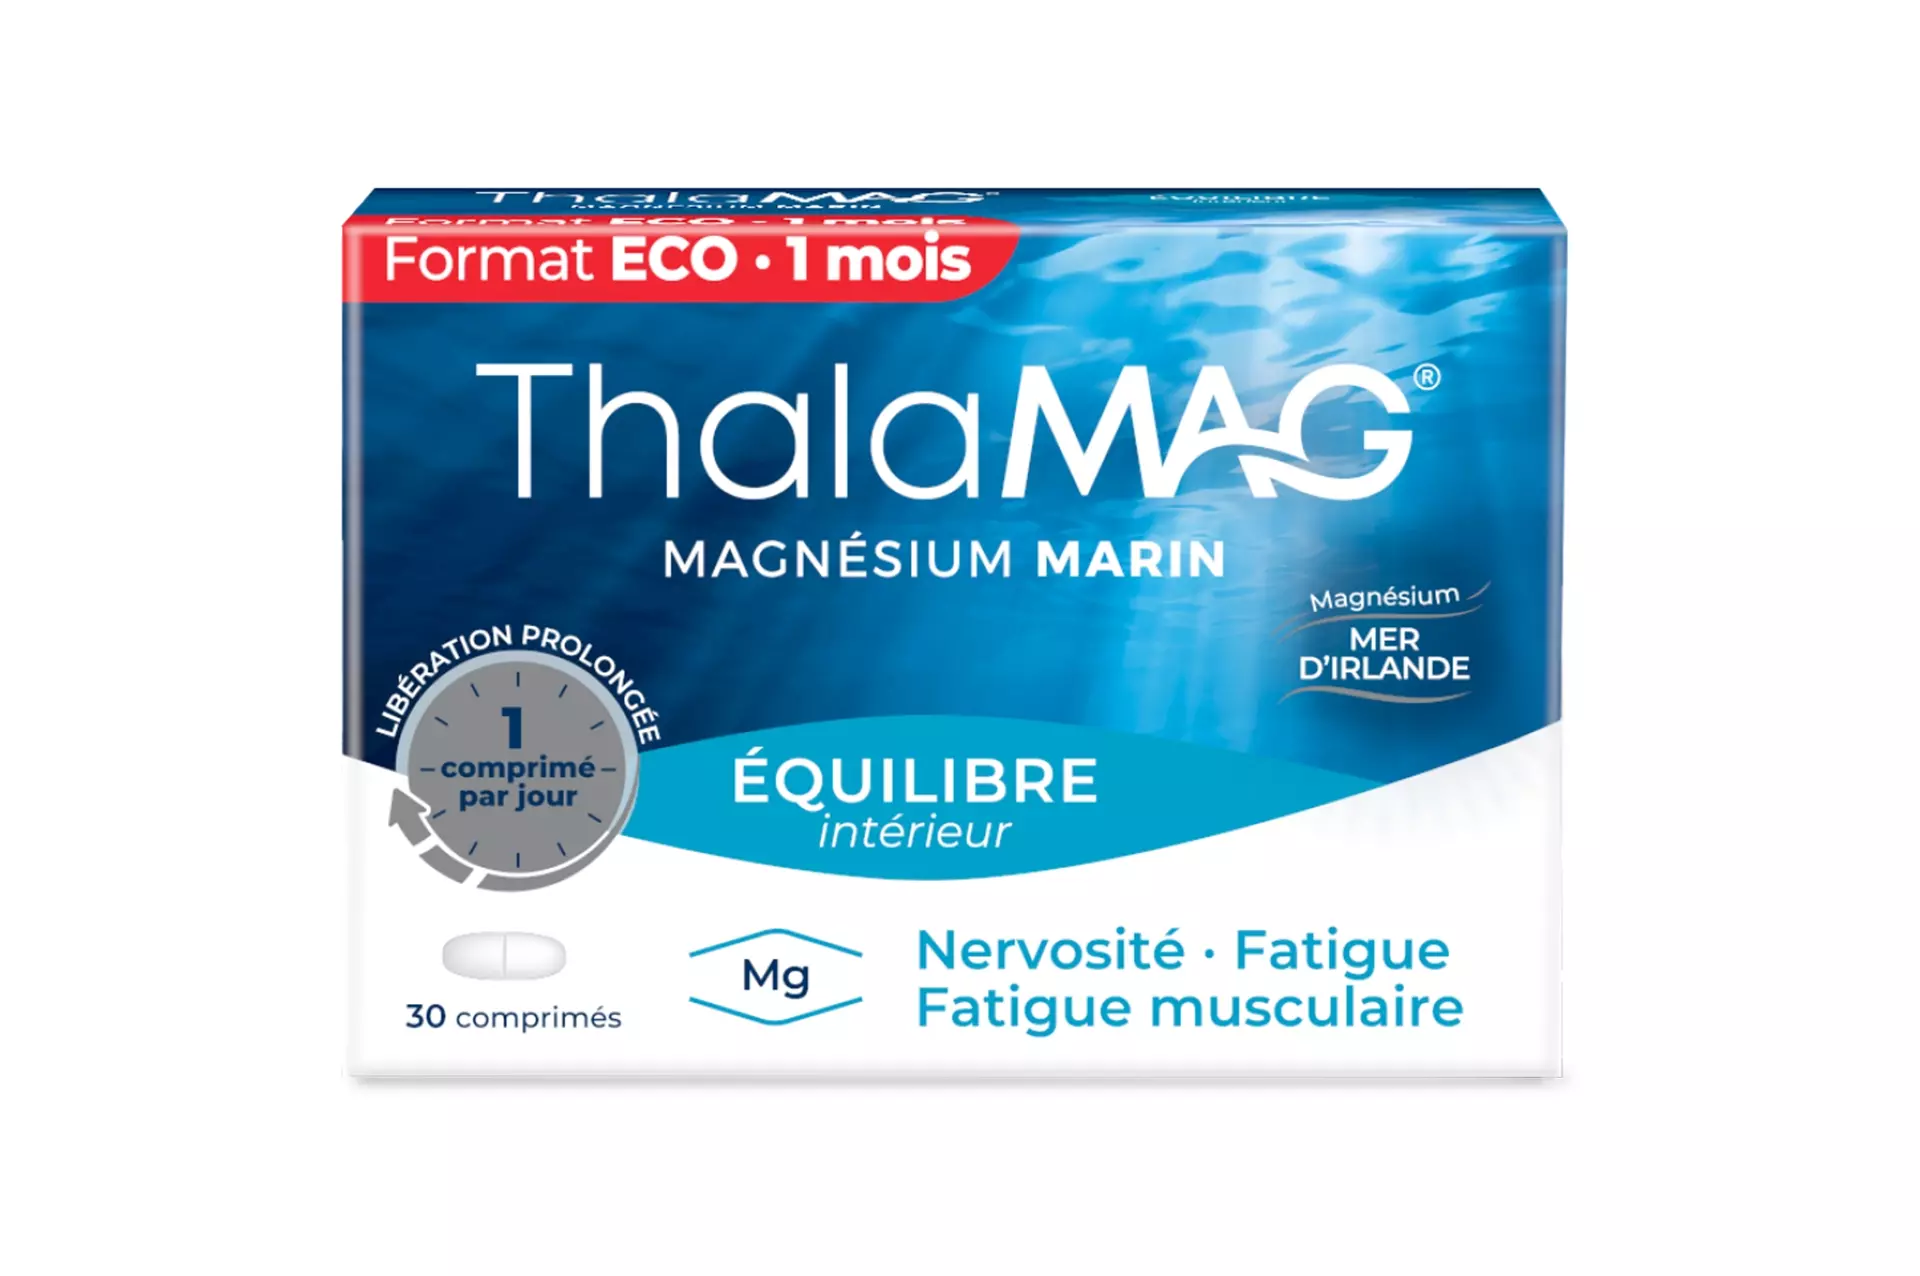 Thalamag Magnésium Marin fatigue musculaire